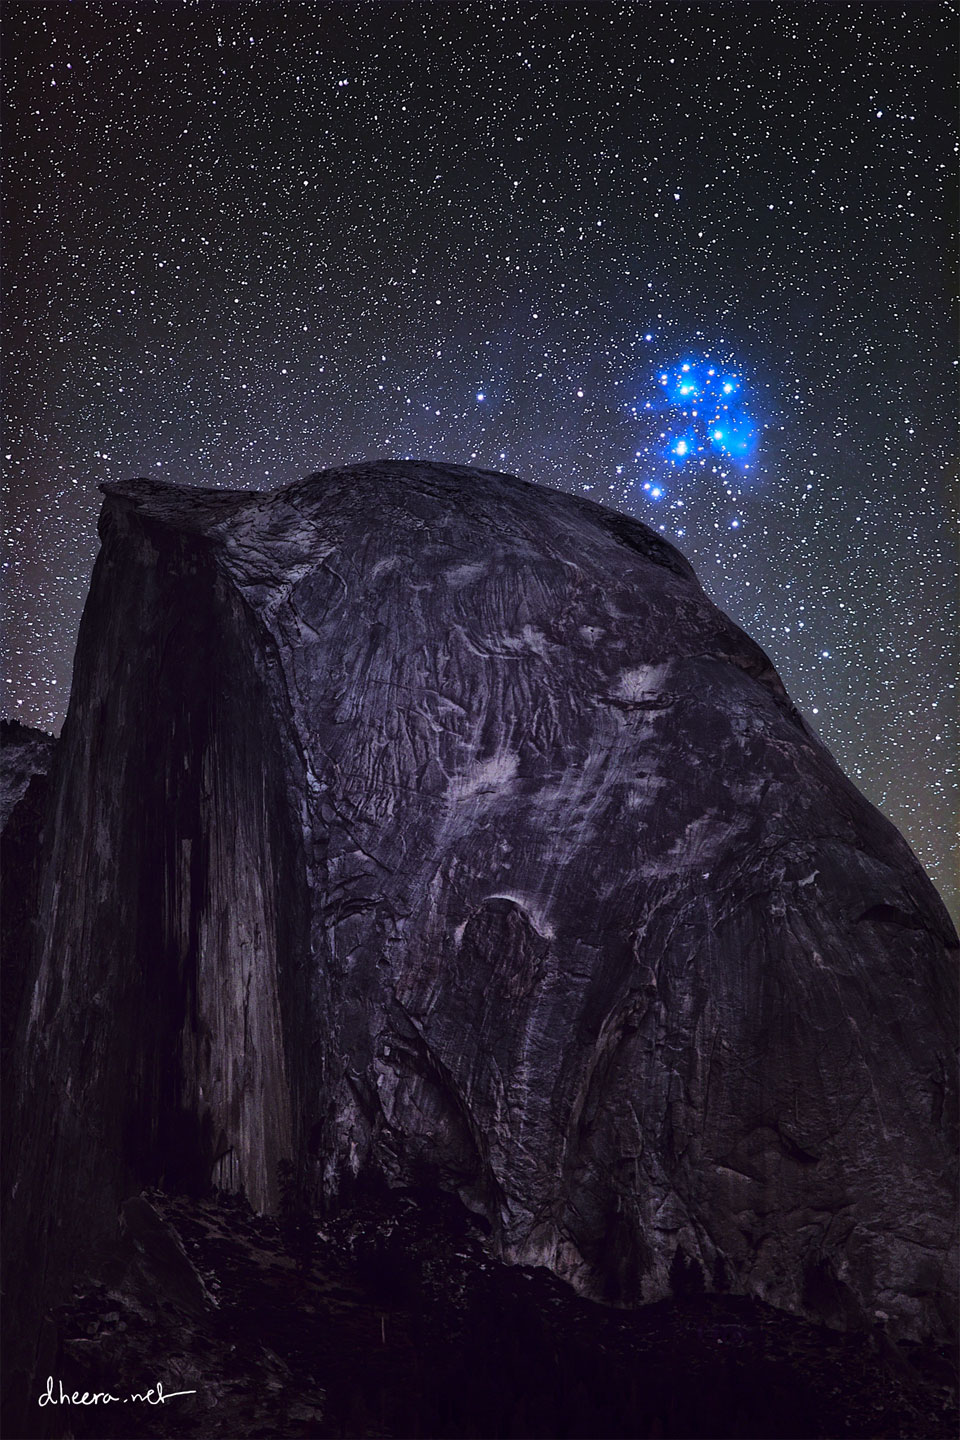 Pleiades over Half Dome